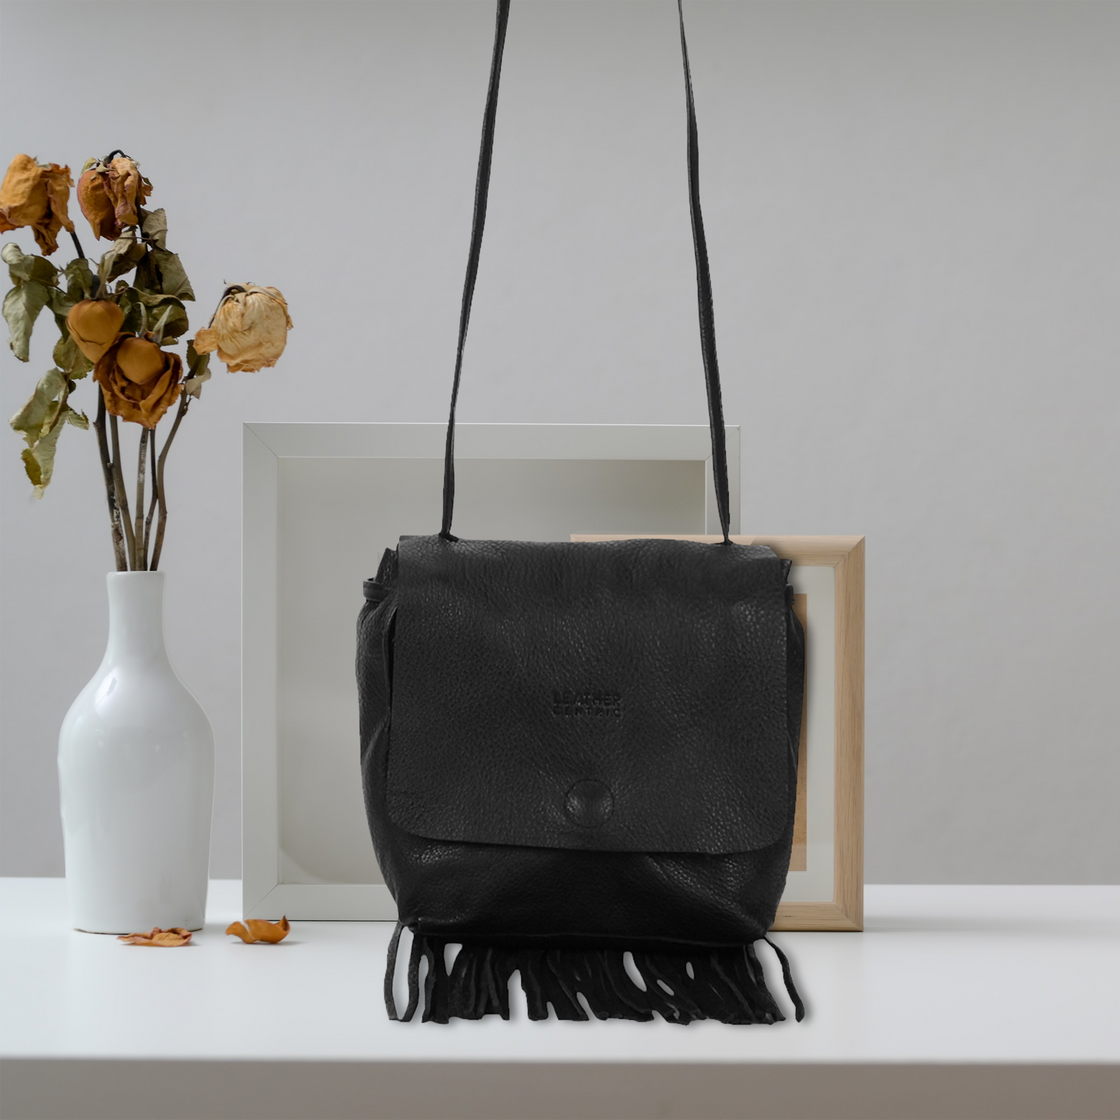 Leather Fringe Boho Crossbody Bag with Tassel for Women (Small, Black)